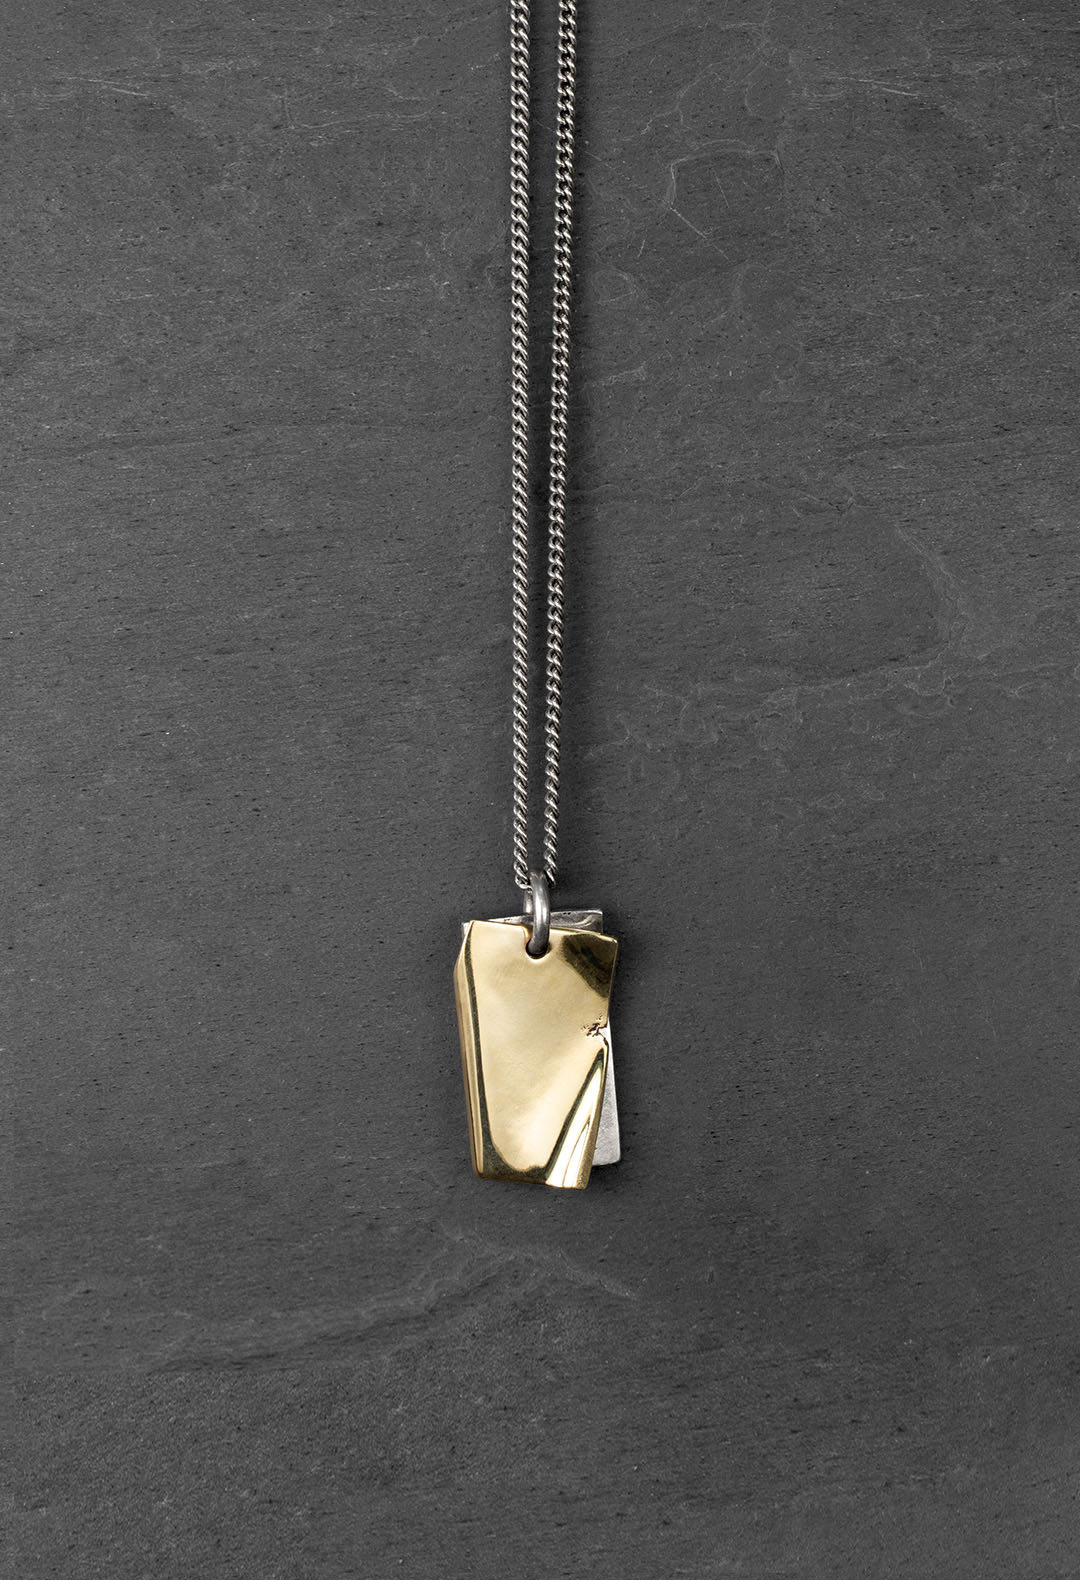 Gold folded edge necklace